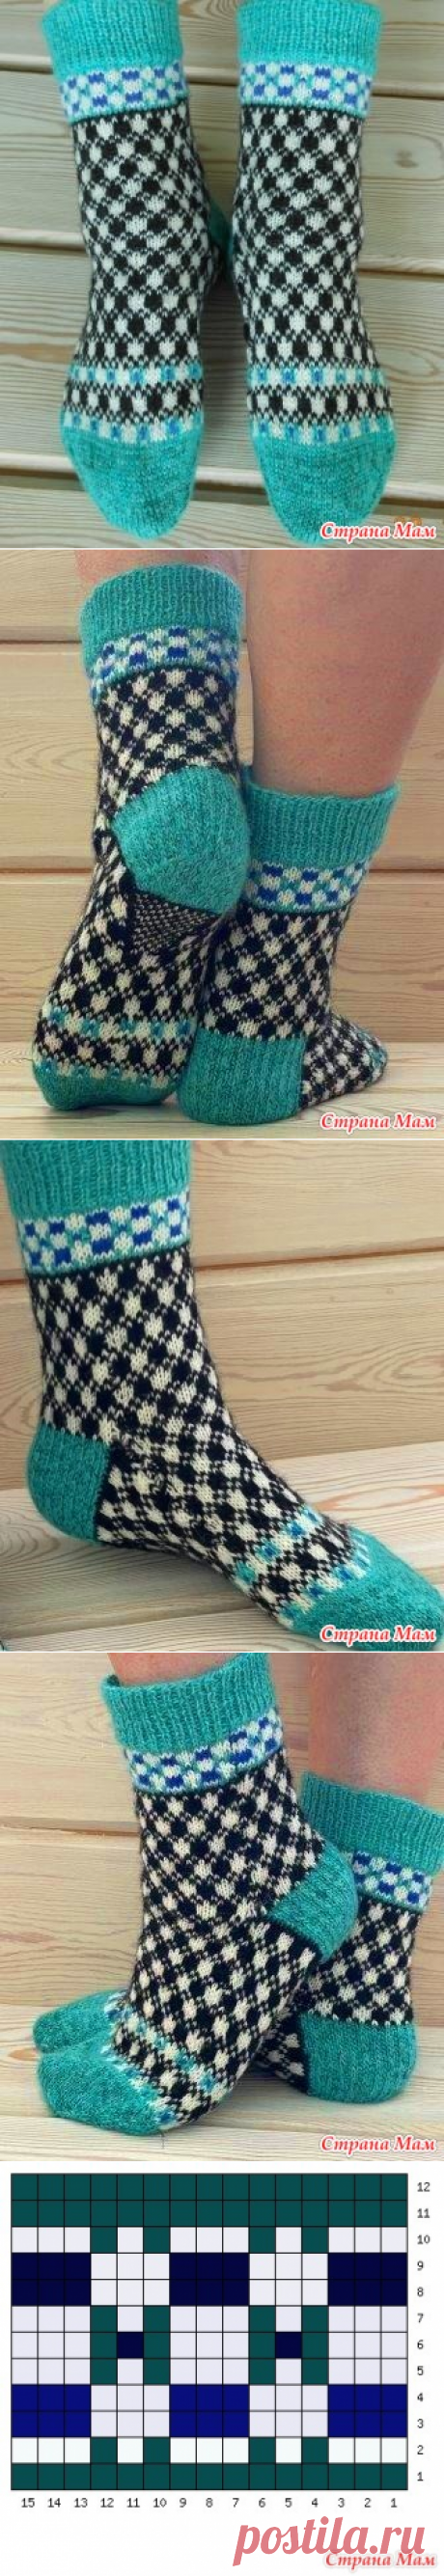 Жаккардовые носочки - Вязание - Страна Мам